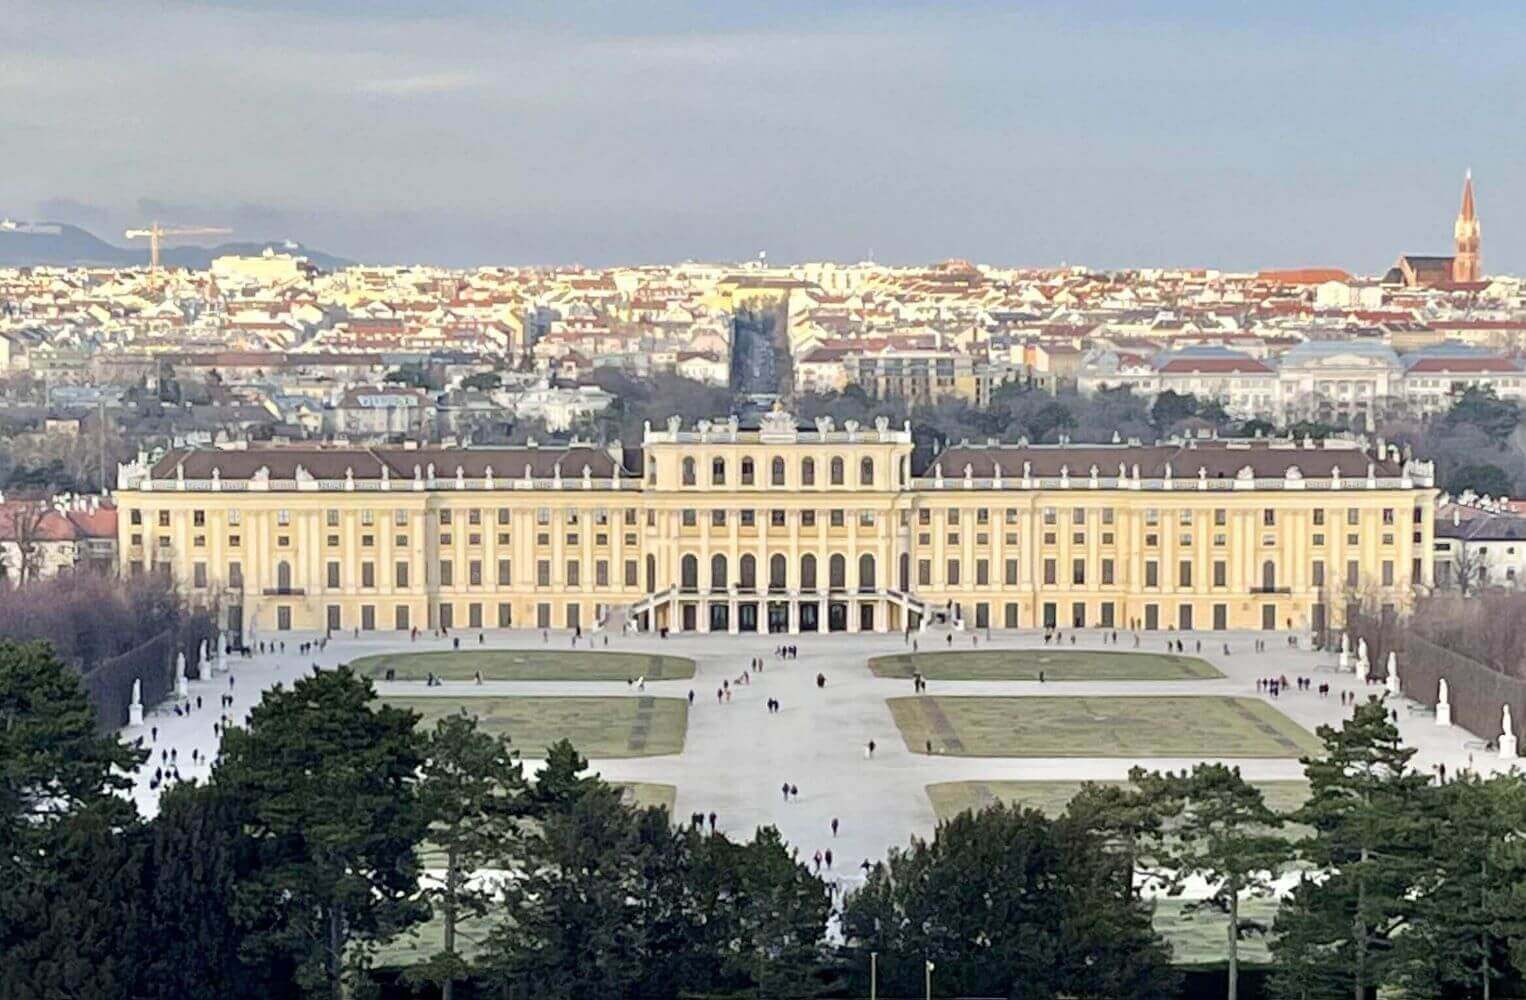 schonbrunn palace seen from the gardens